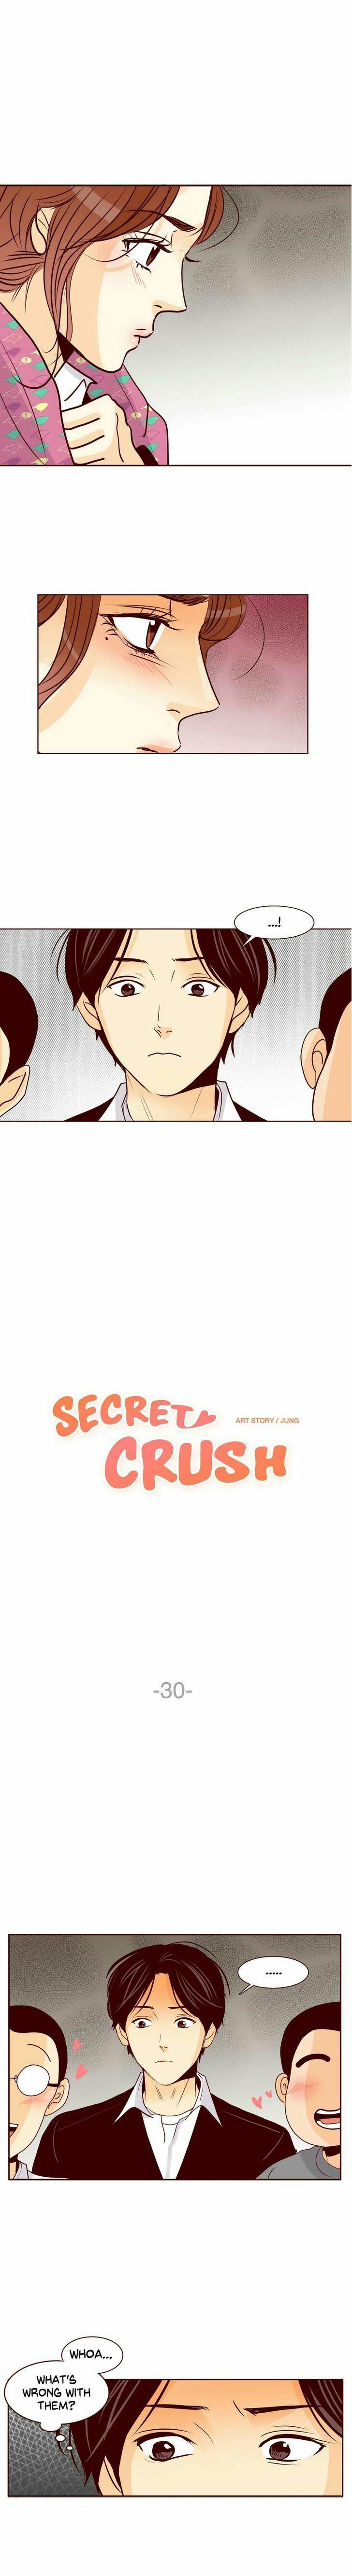 Secret crush online